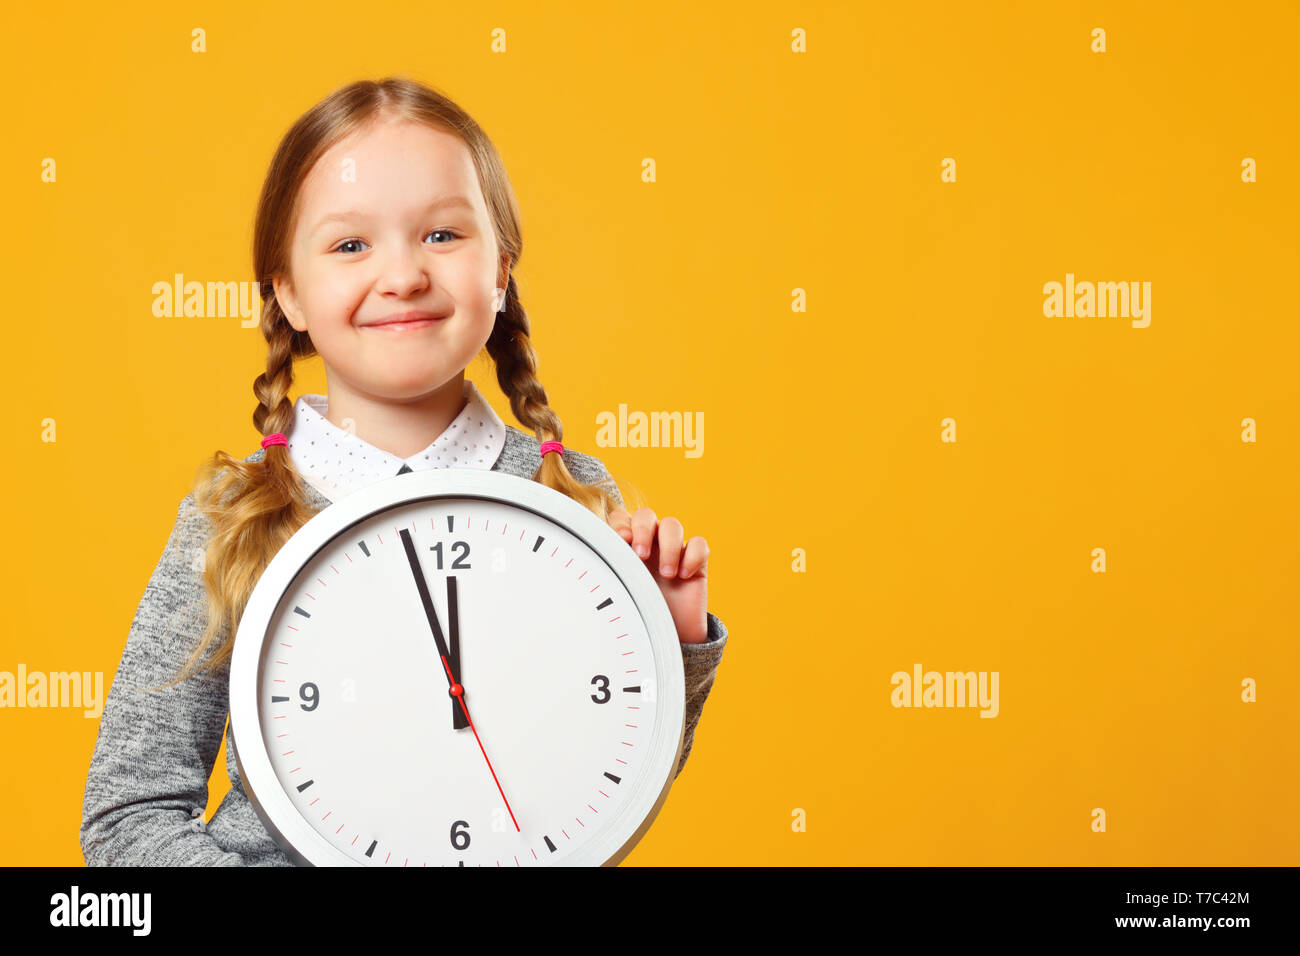 Bambina tenendo un grande orologio su sfondo giallo. Il concetto di istruzione, scuola, scadenza, tempo per imparare. Foto Stock